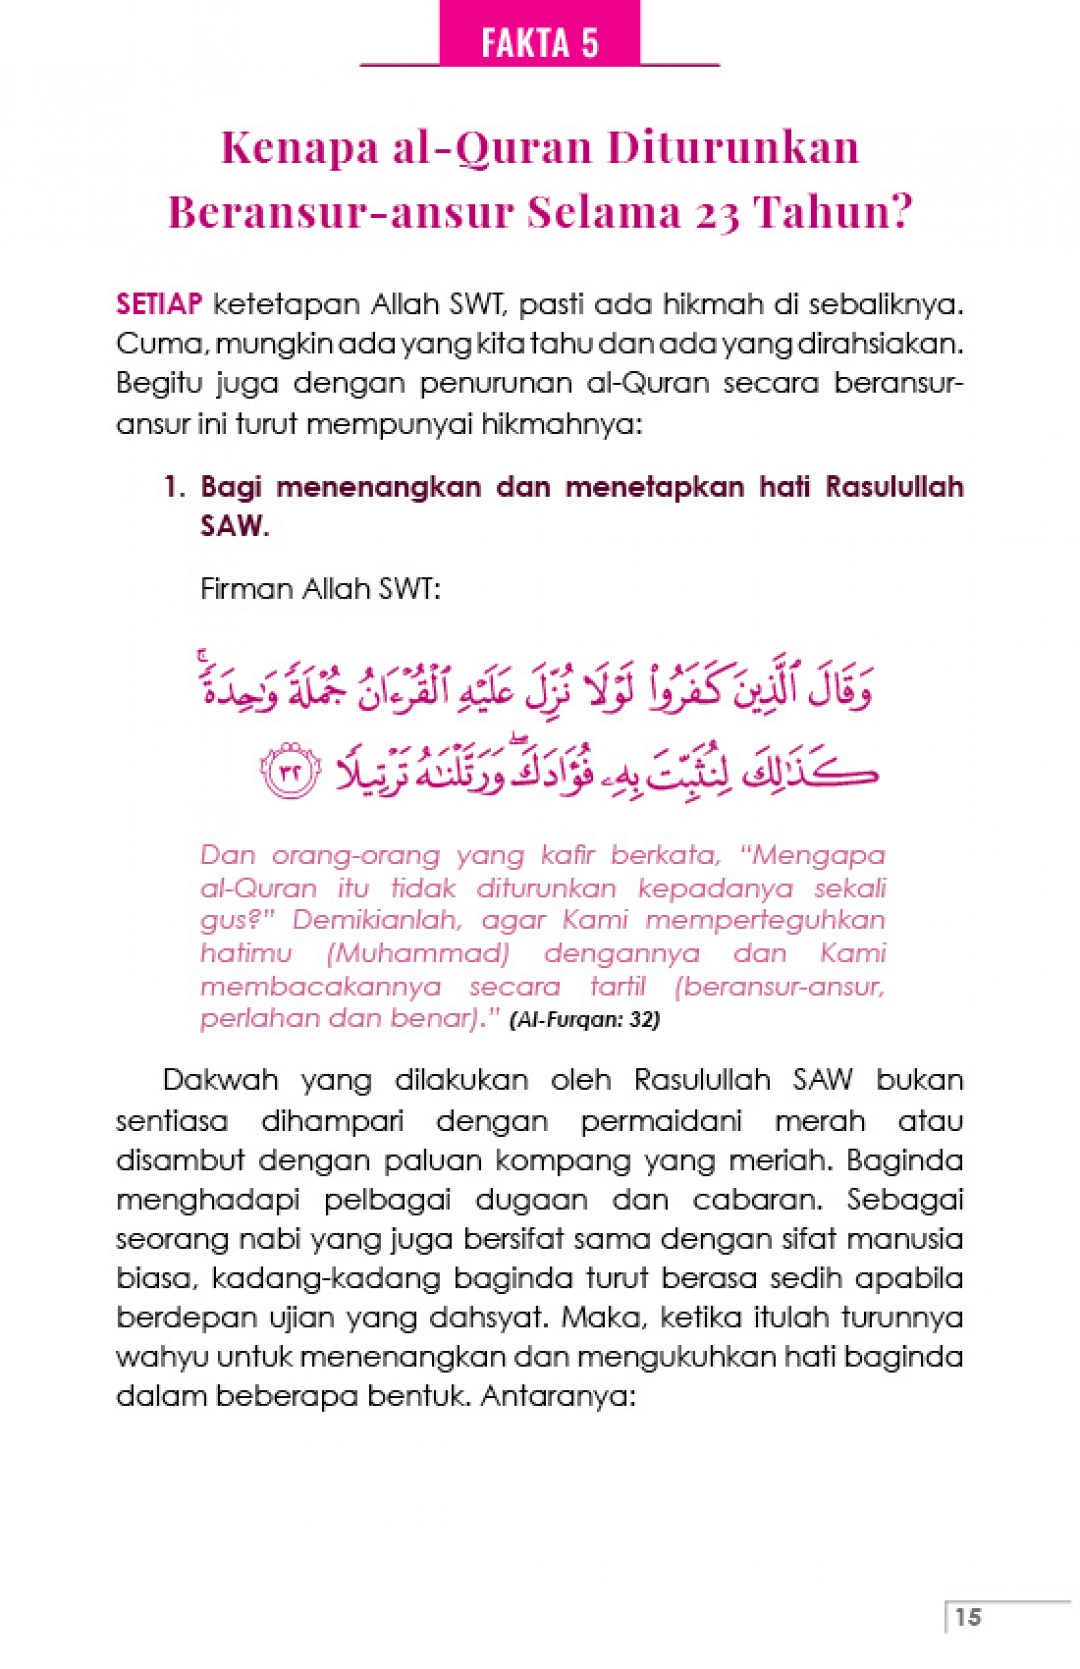 44 Fakta Penting Tentang Al-Quran